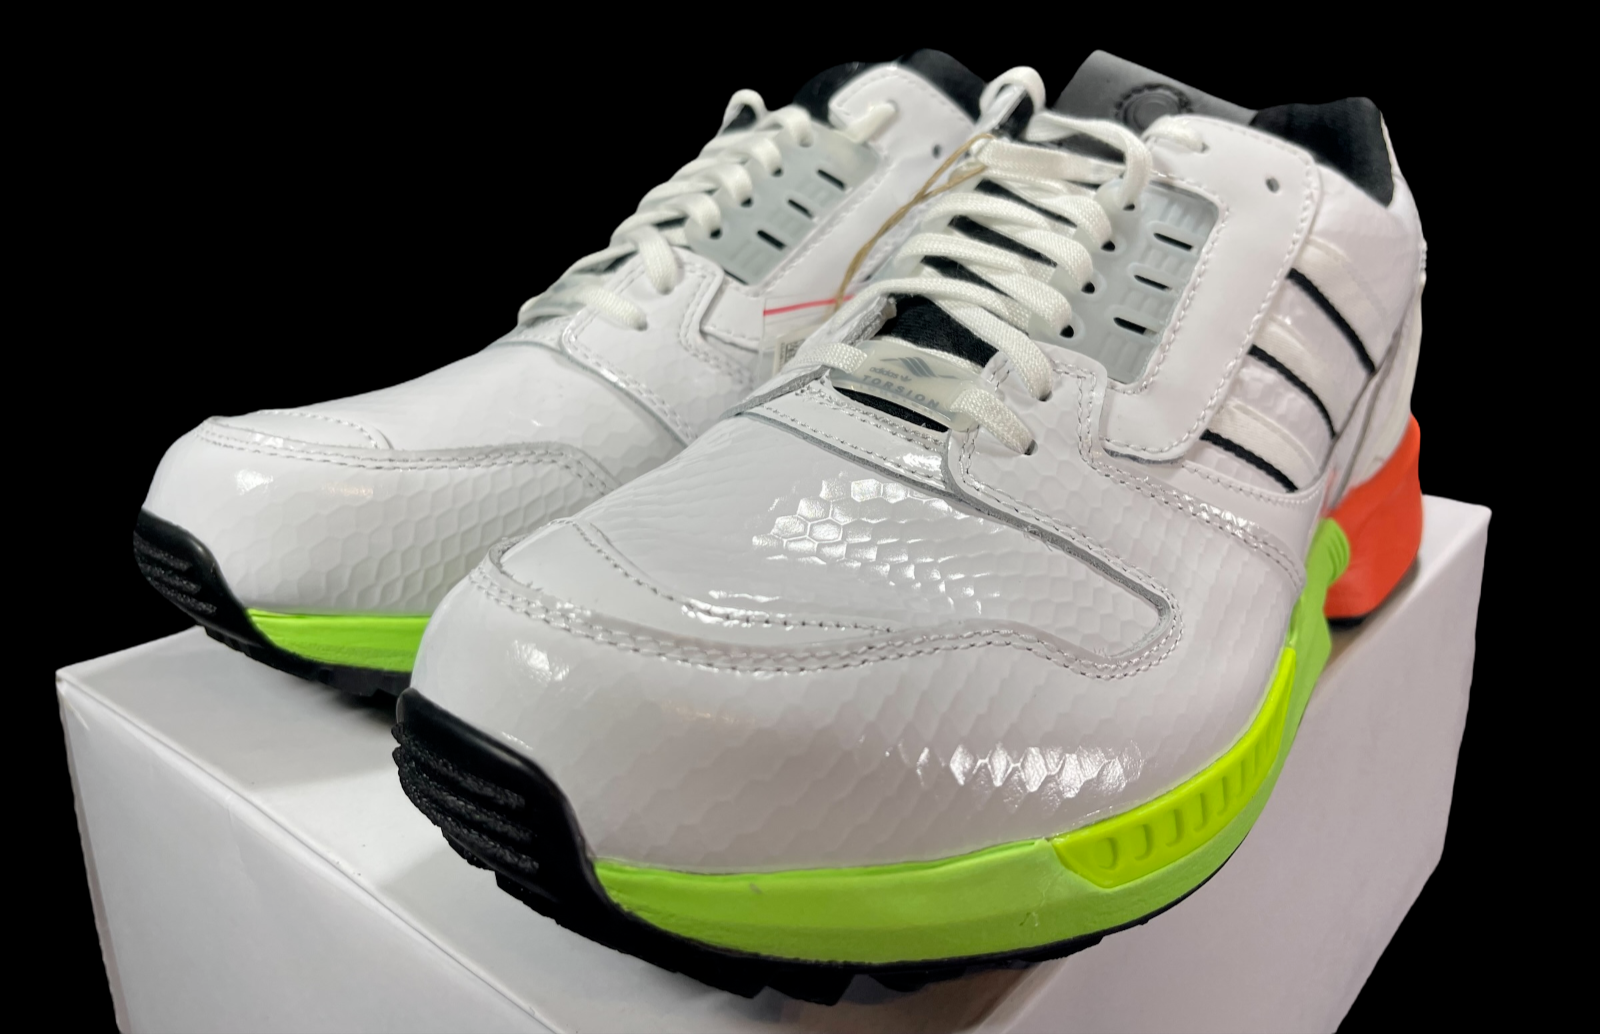 adidas Originals A-ZX Series ZX 8000 SG Golf Shoes Sneaker FZ4412 